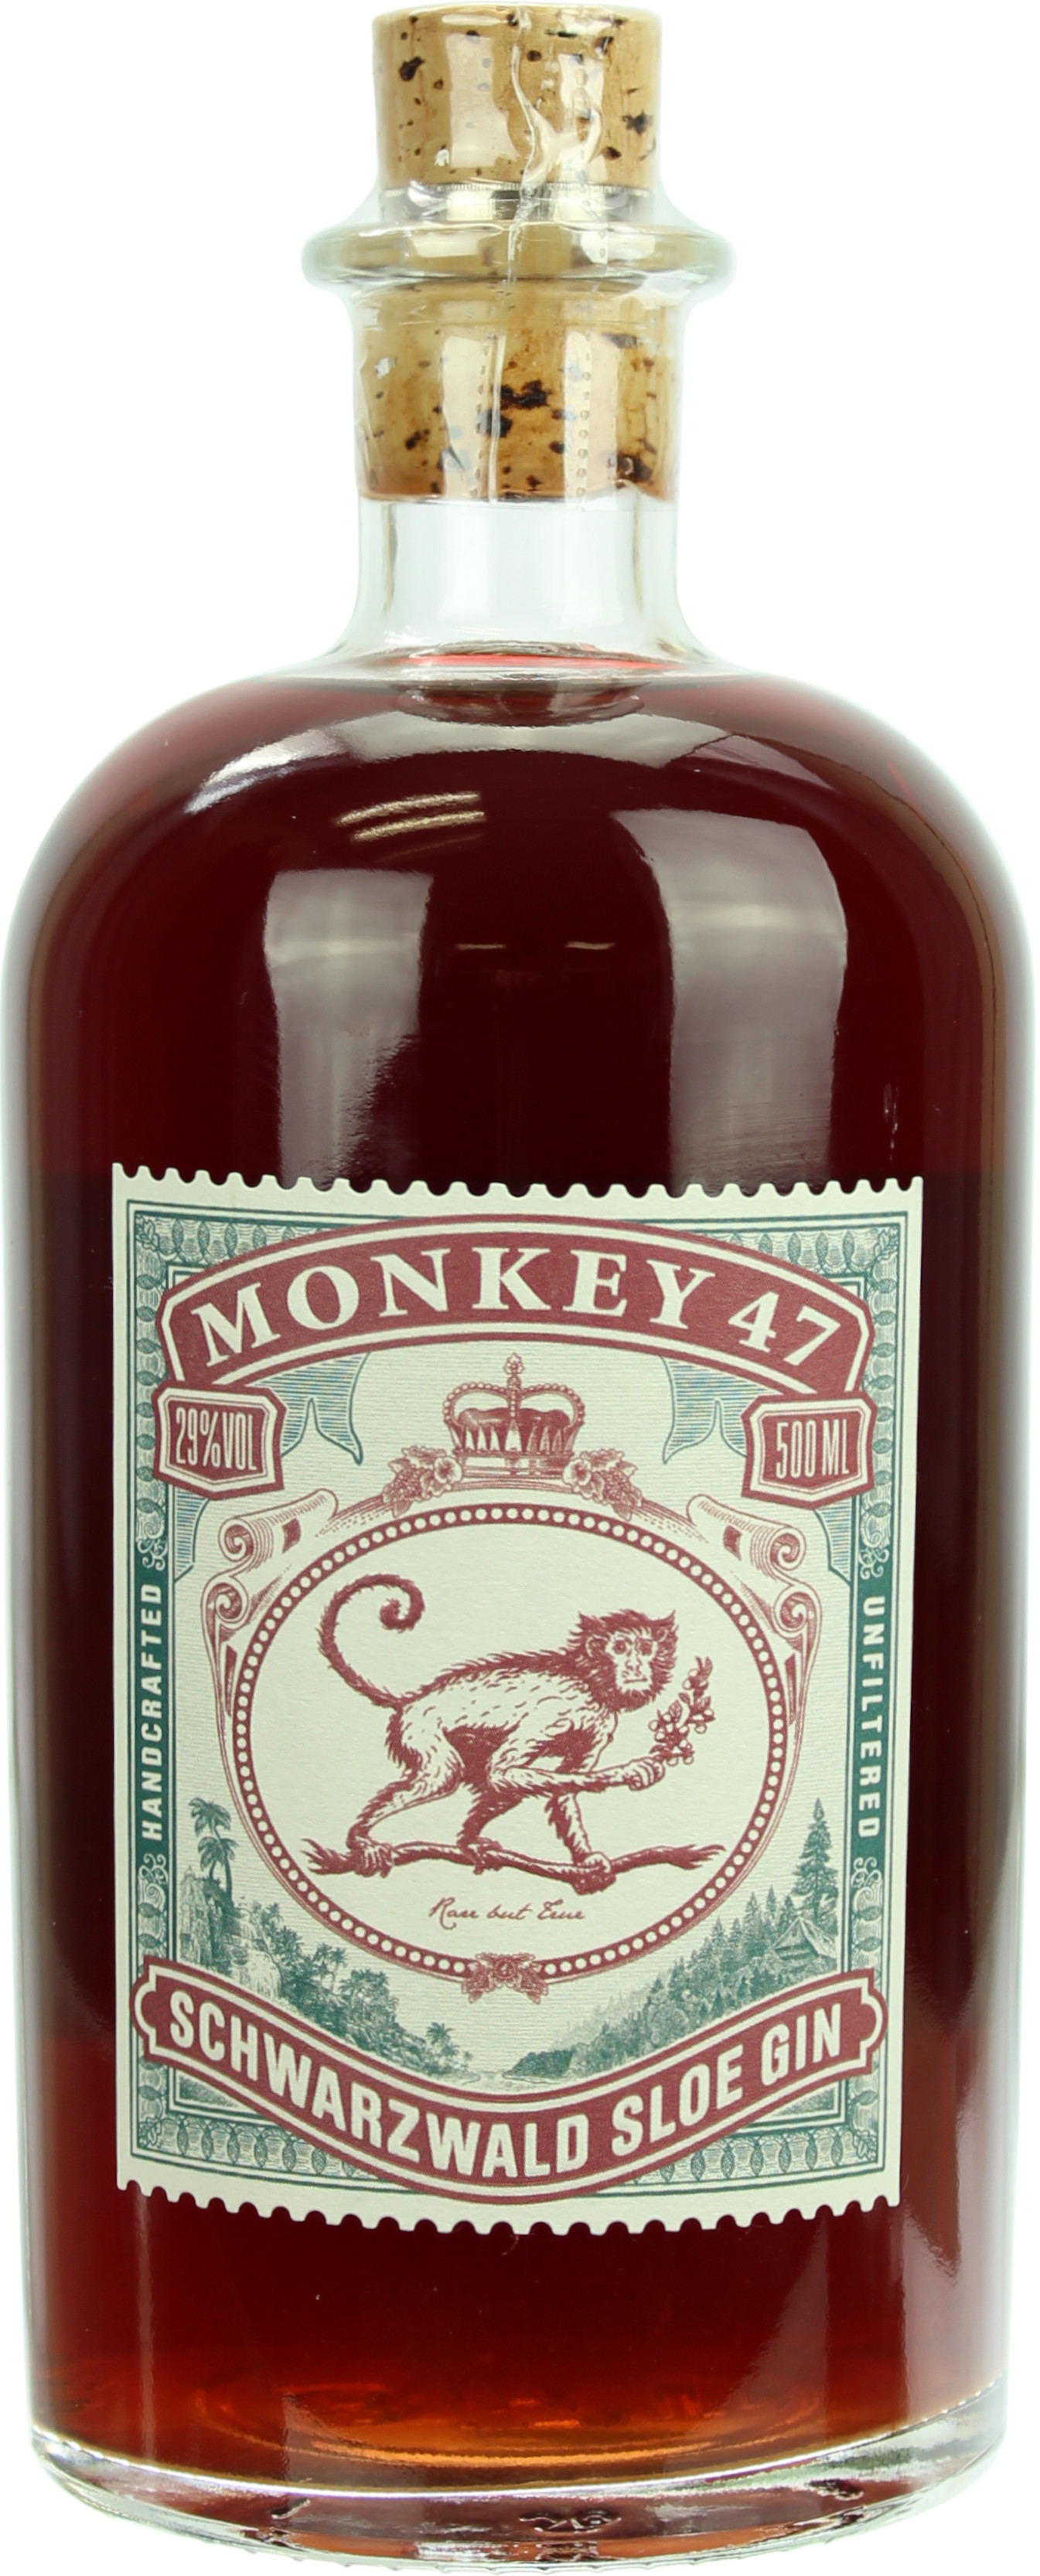 Monkey 47 Sloe Gin 29.0% 0,5l